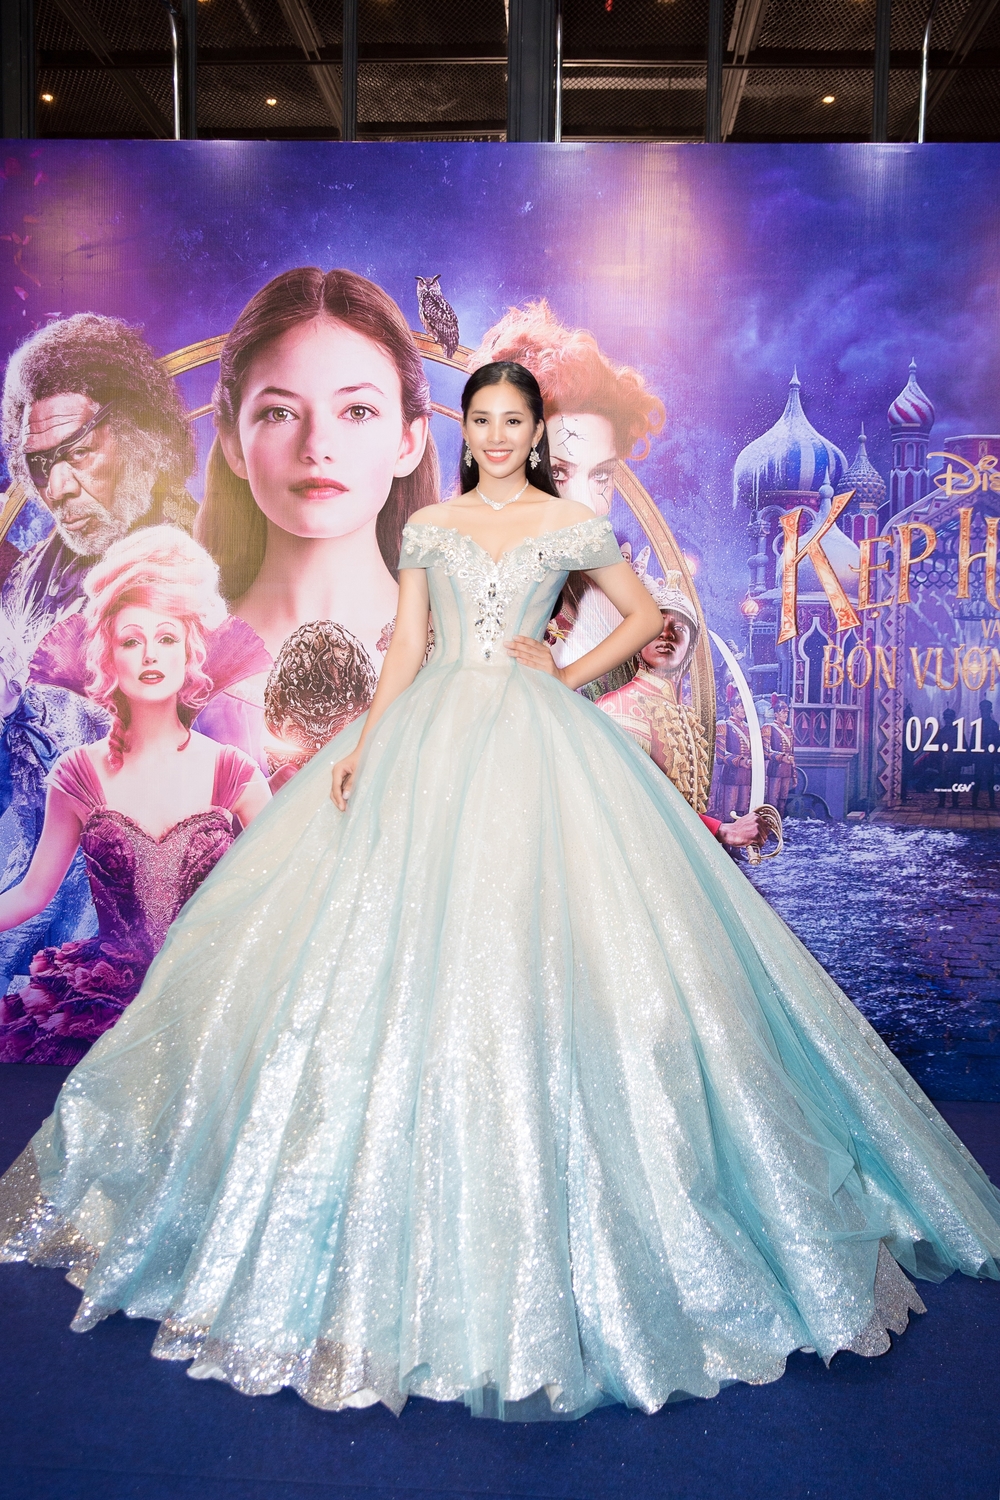 Hoa hậu Trần Tiểu Vy diện váy khổng lồ hóa công chúa, khoe sắc đẹp 